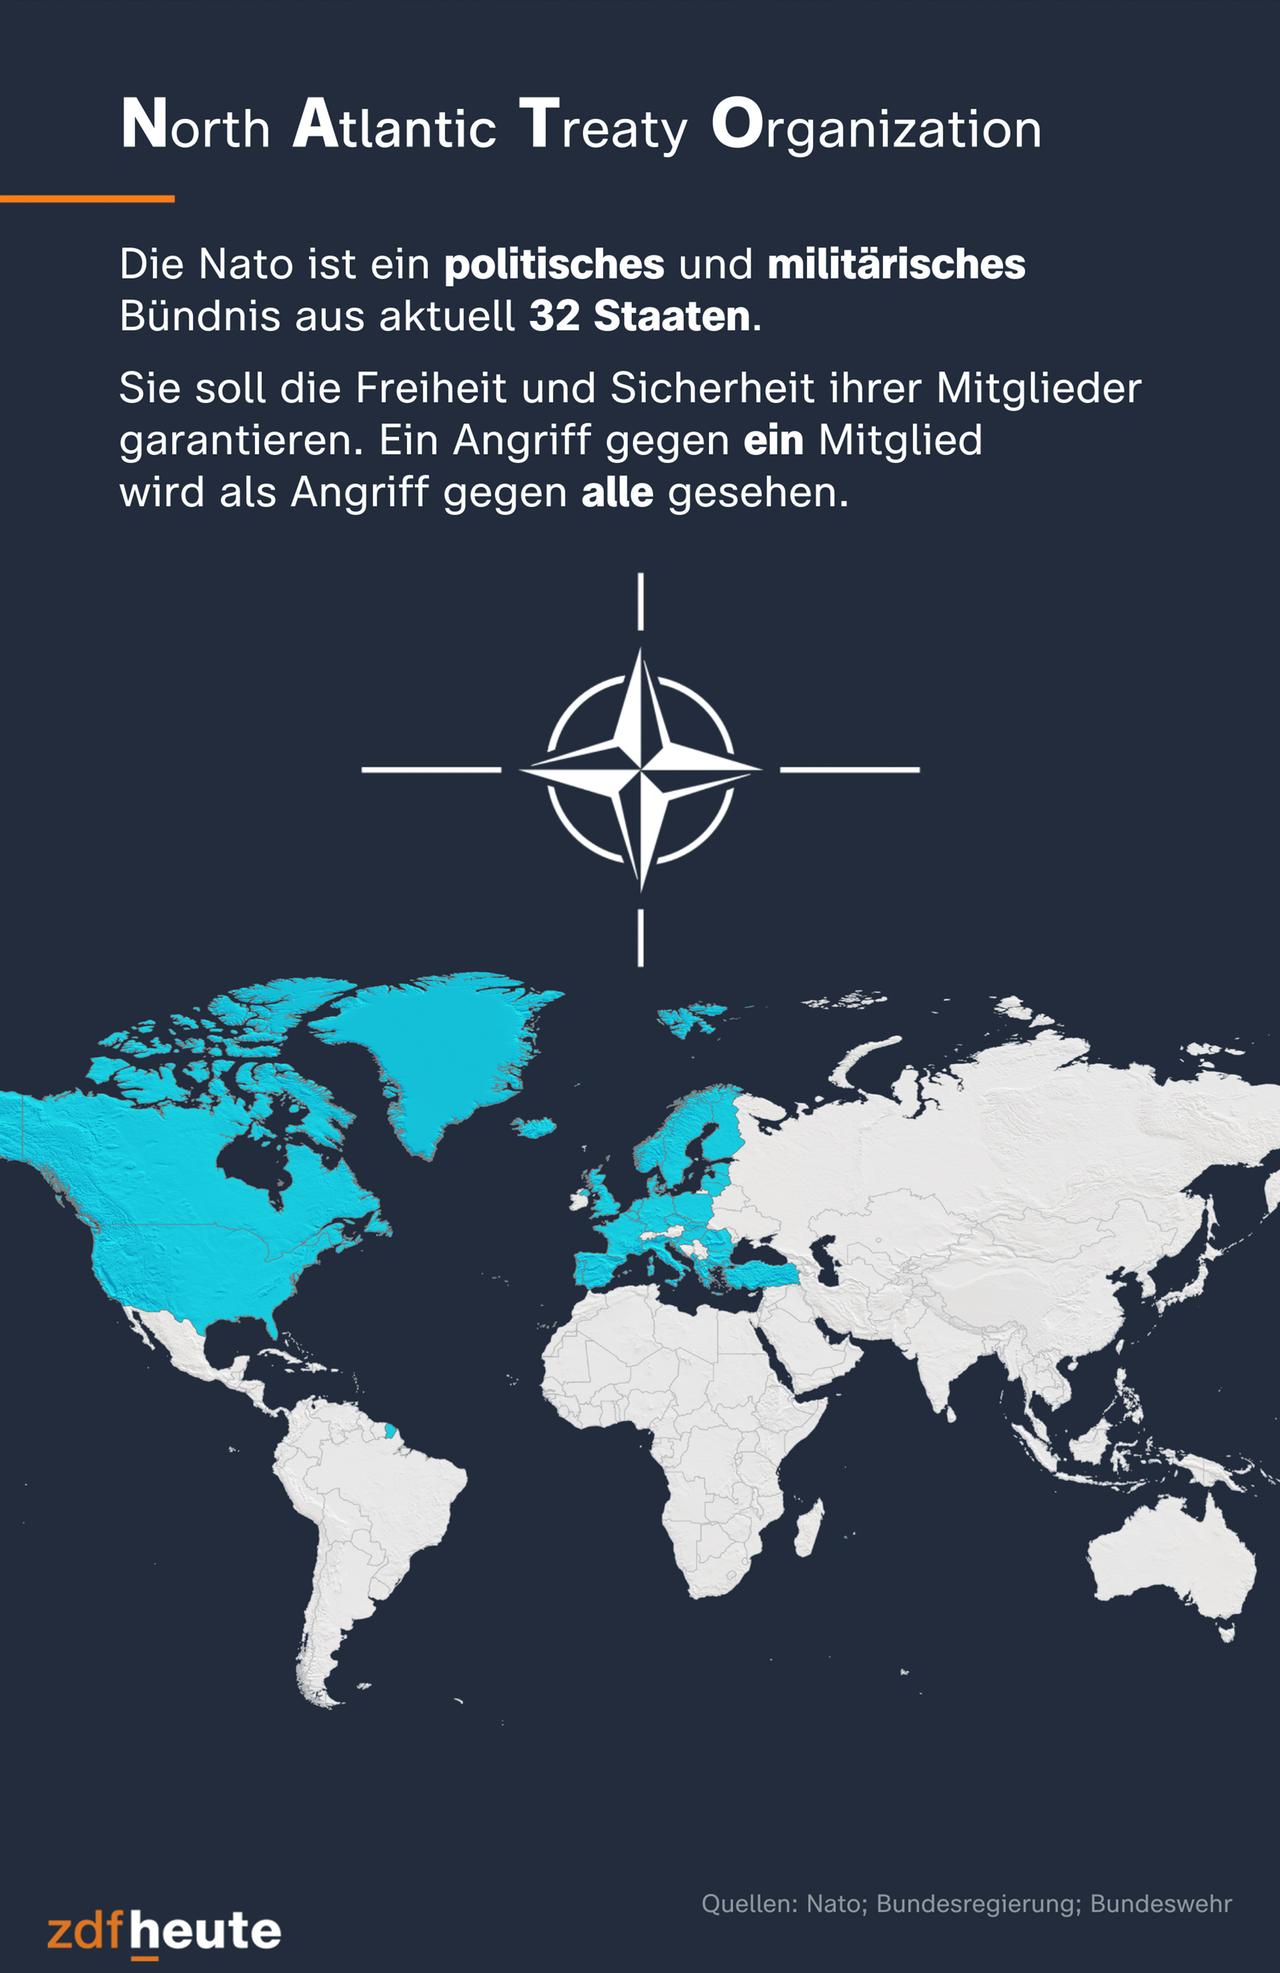 Die Infografik zeigt die 32 Länder, die zur Nato gehören. Die Nato ist ein politisches und militärisches Bündnis. Sie soll Freiheit und Sicherheit ihrer Mitglieder garantieren.  